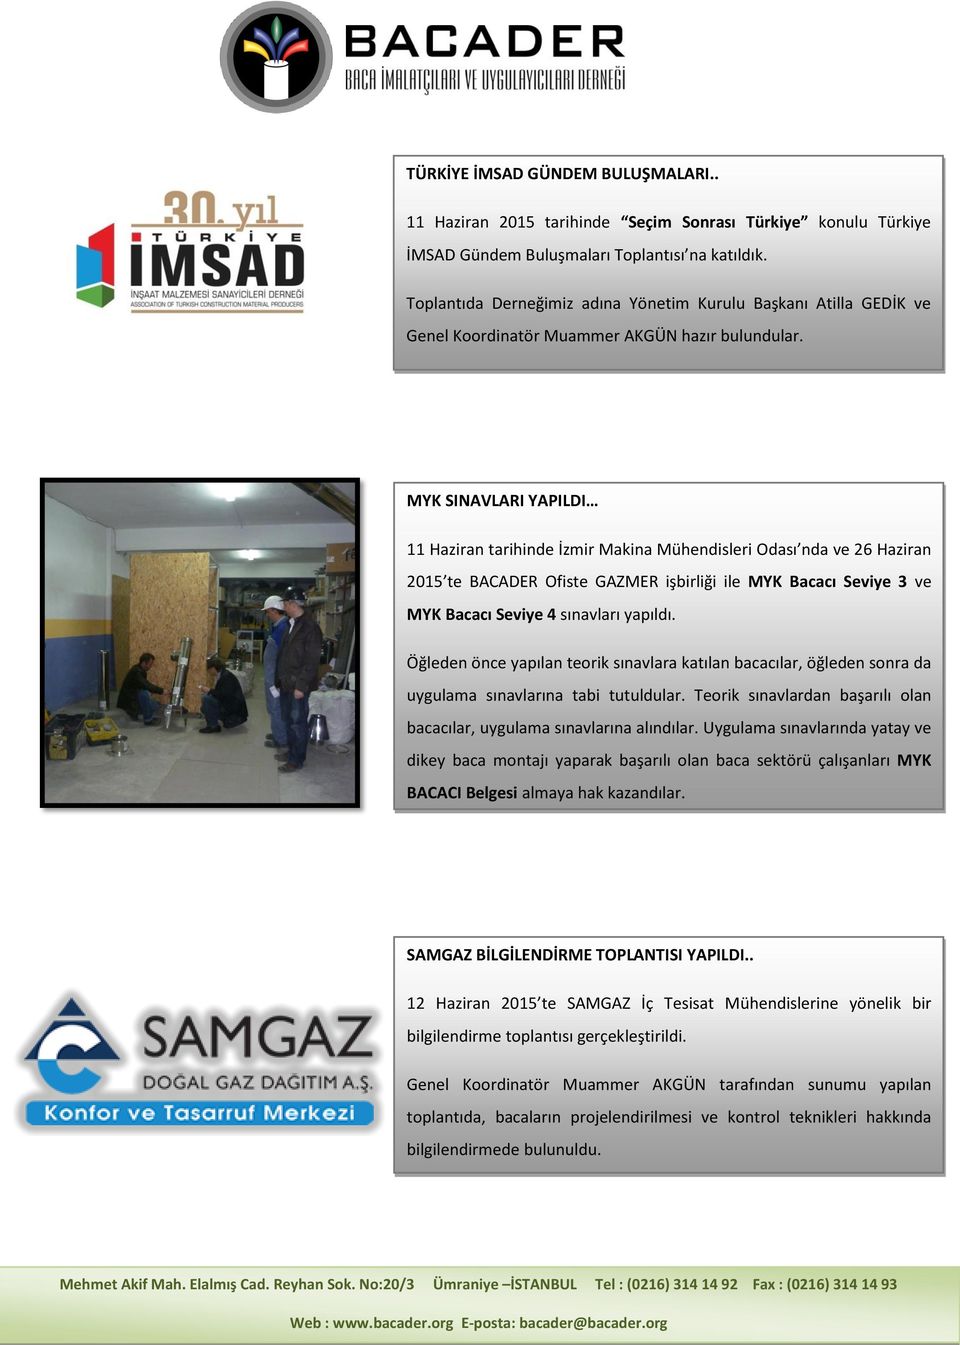 MYK SINAVLARI YAPILDI 11 Haziran tarihinde İzmir Makina Mühendisleri Odası nda ve 26 Haziran 2015 te BACADER Ofiste GAZMER işbirliği ile MYK Bacacı Seviye 3 ve MYK Bacacı Seviye 4 sınavları yapıldı.